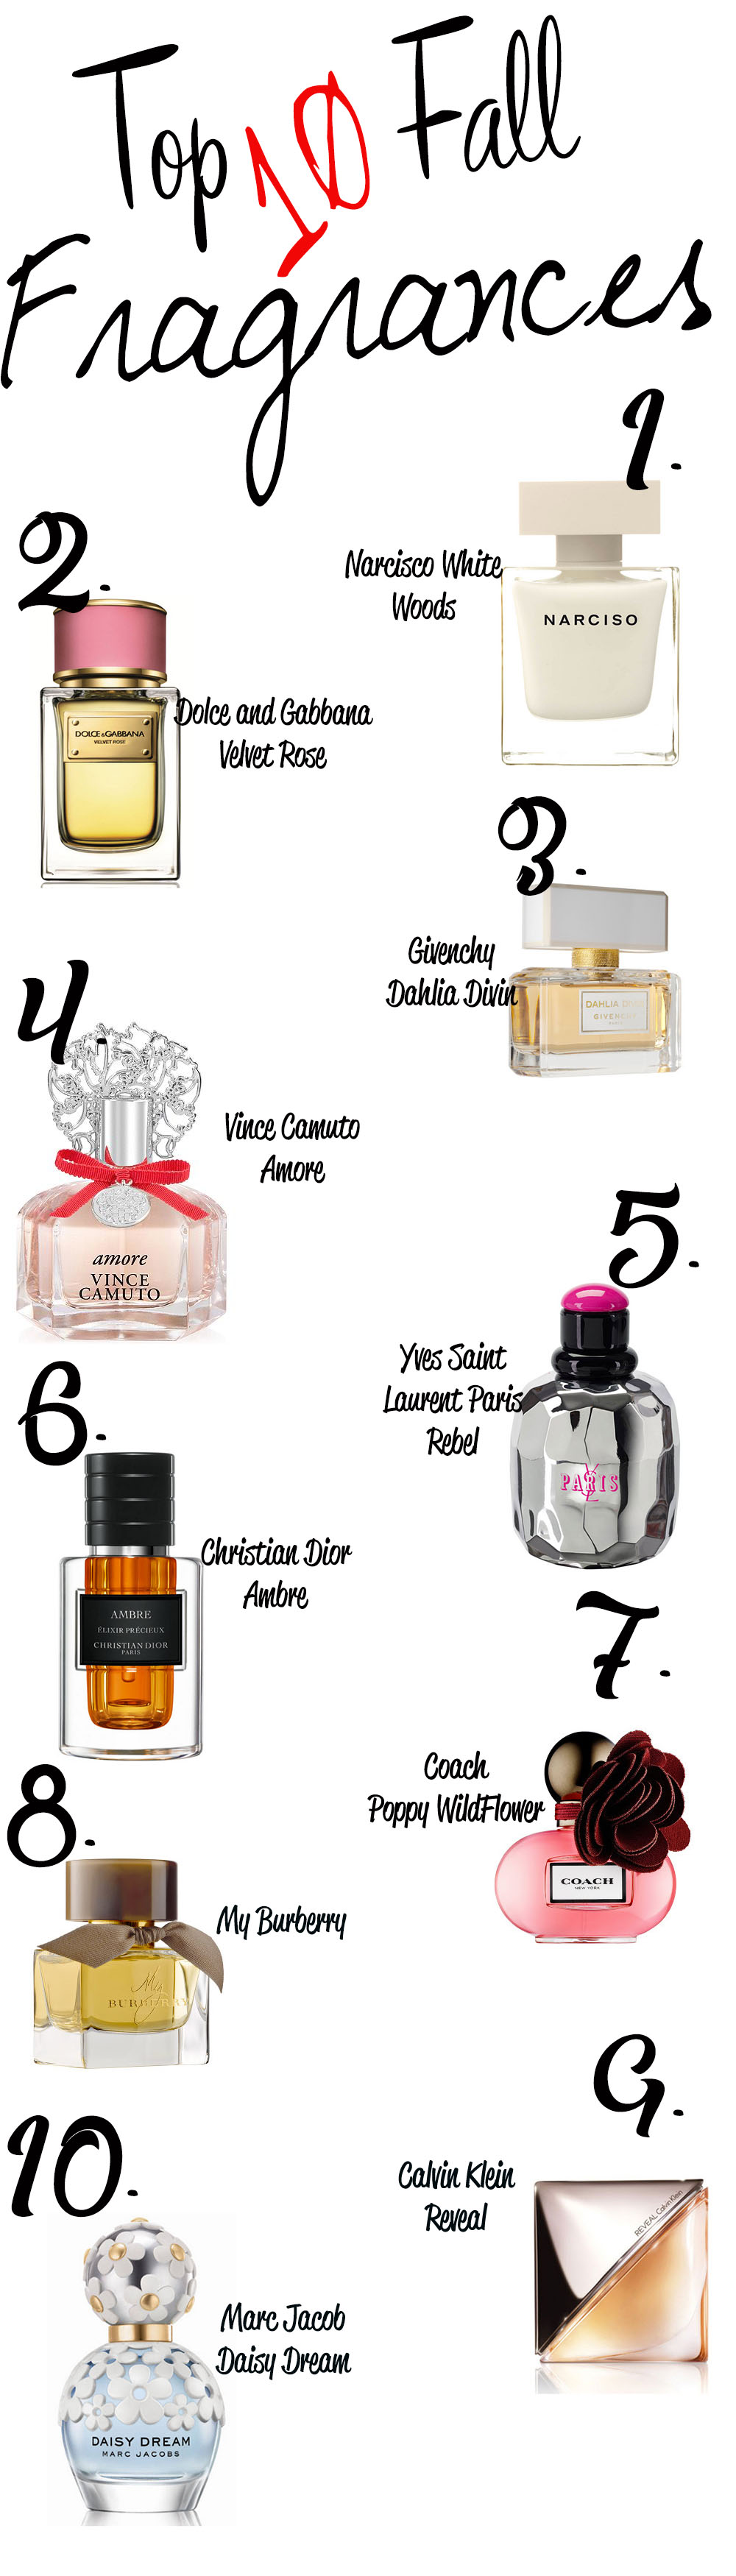 Top Ten Fall Fragrances